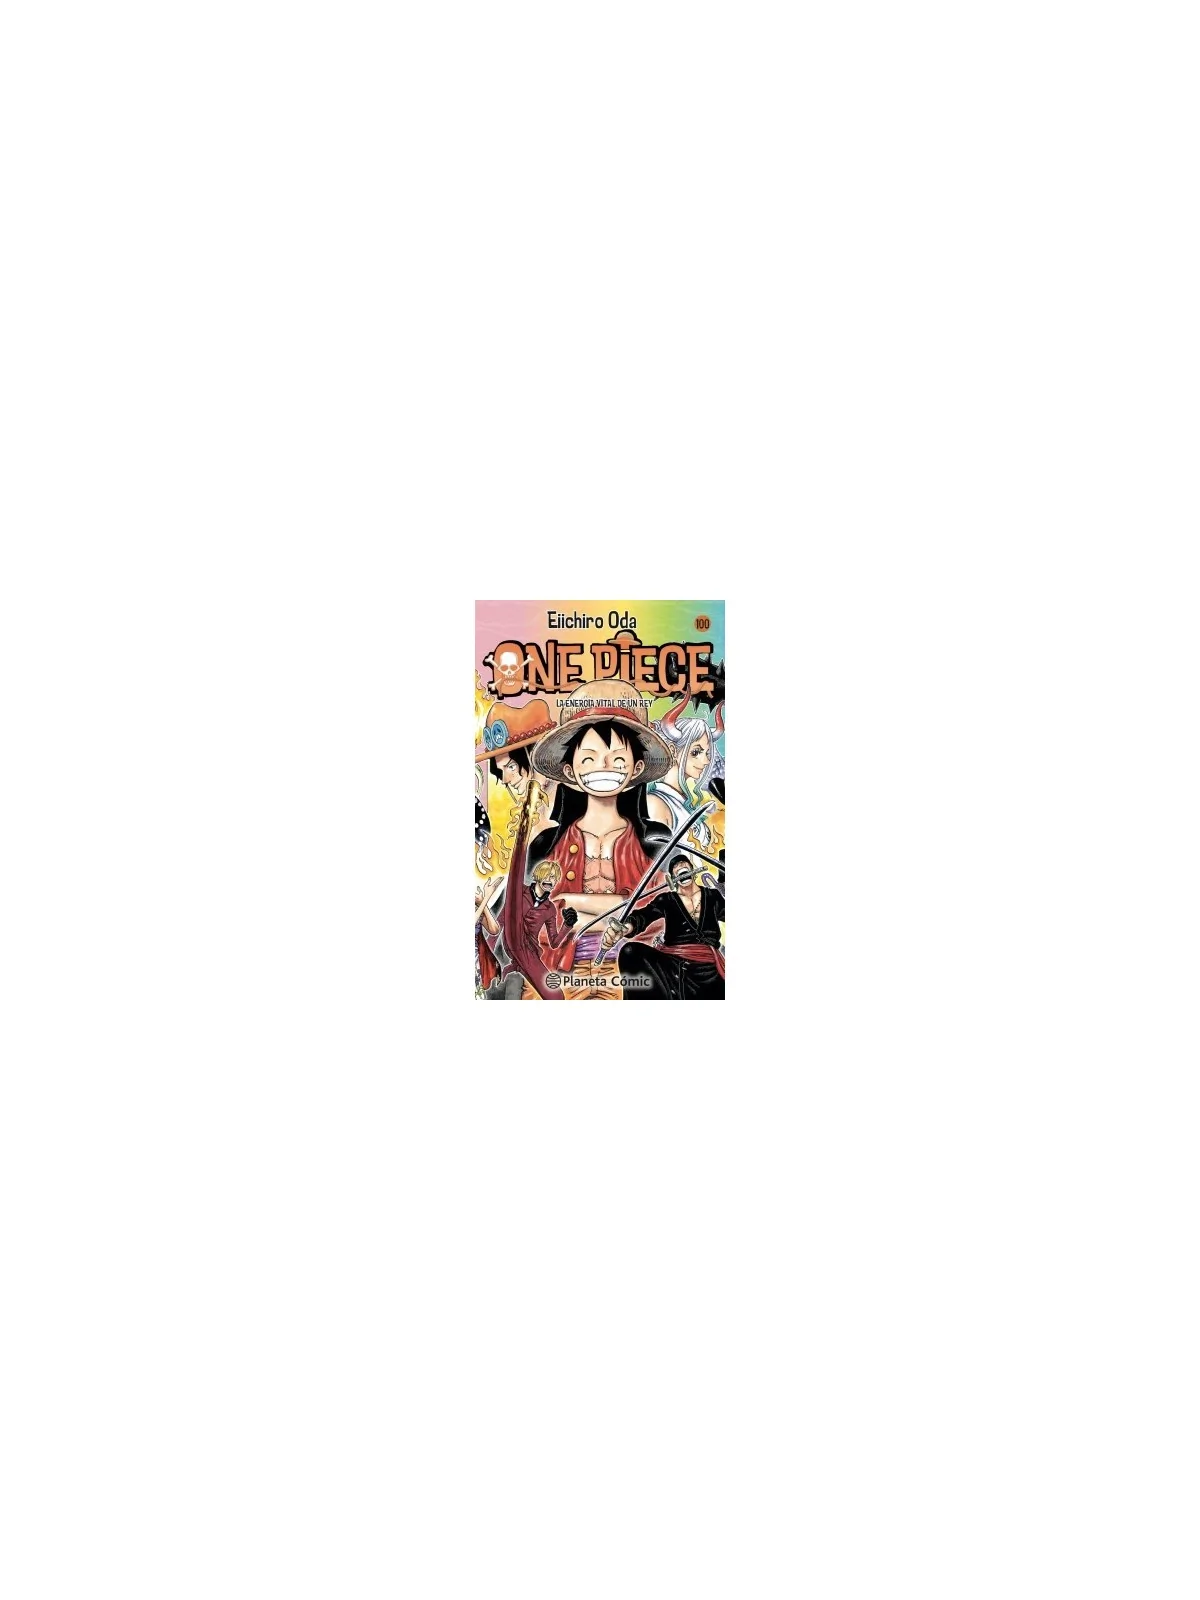 Comprar One Piece Nº 100 barato al mejor precio 8,07 € de Planeta Comi